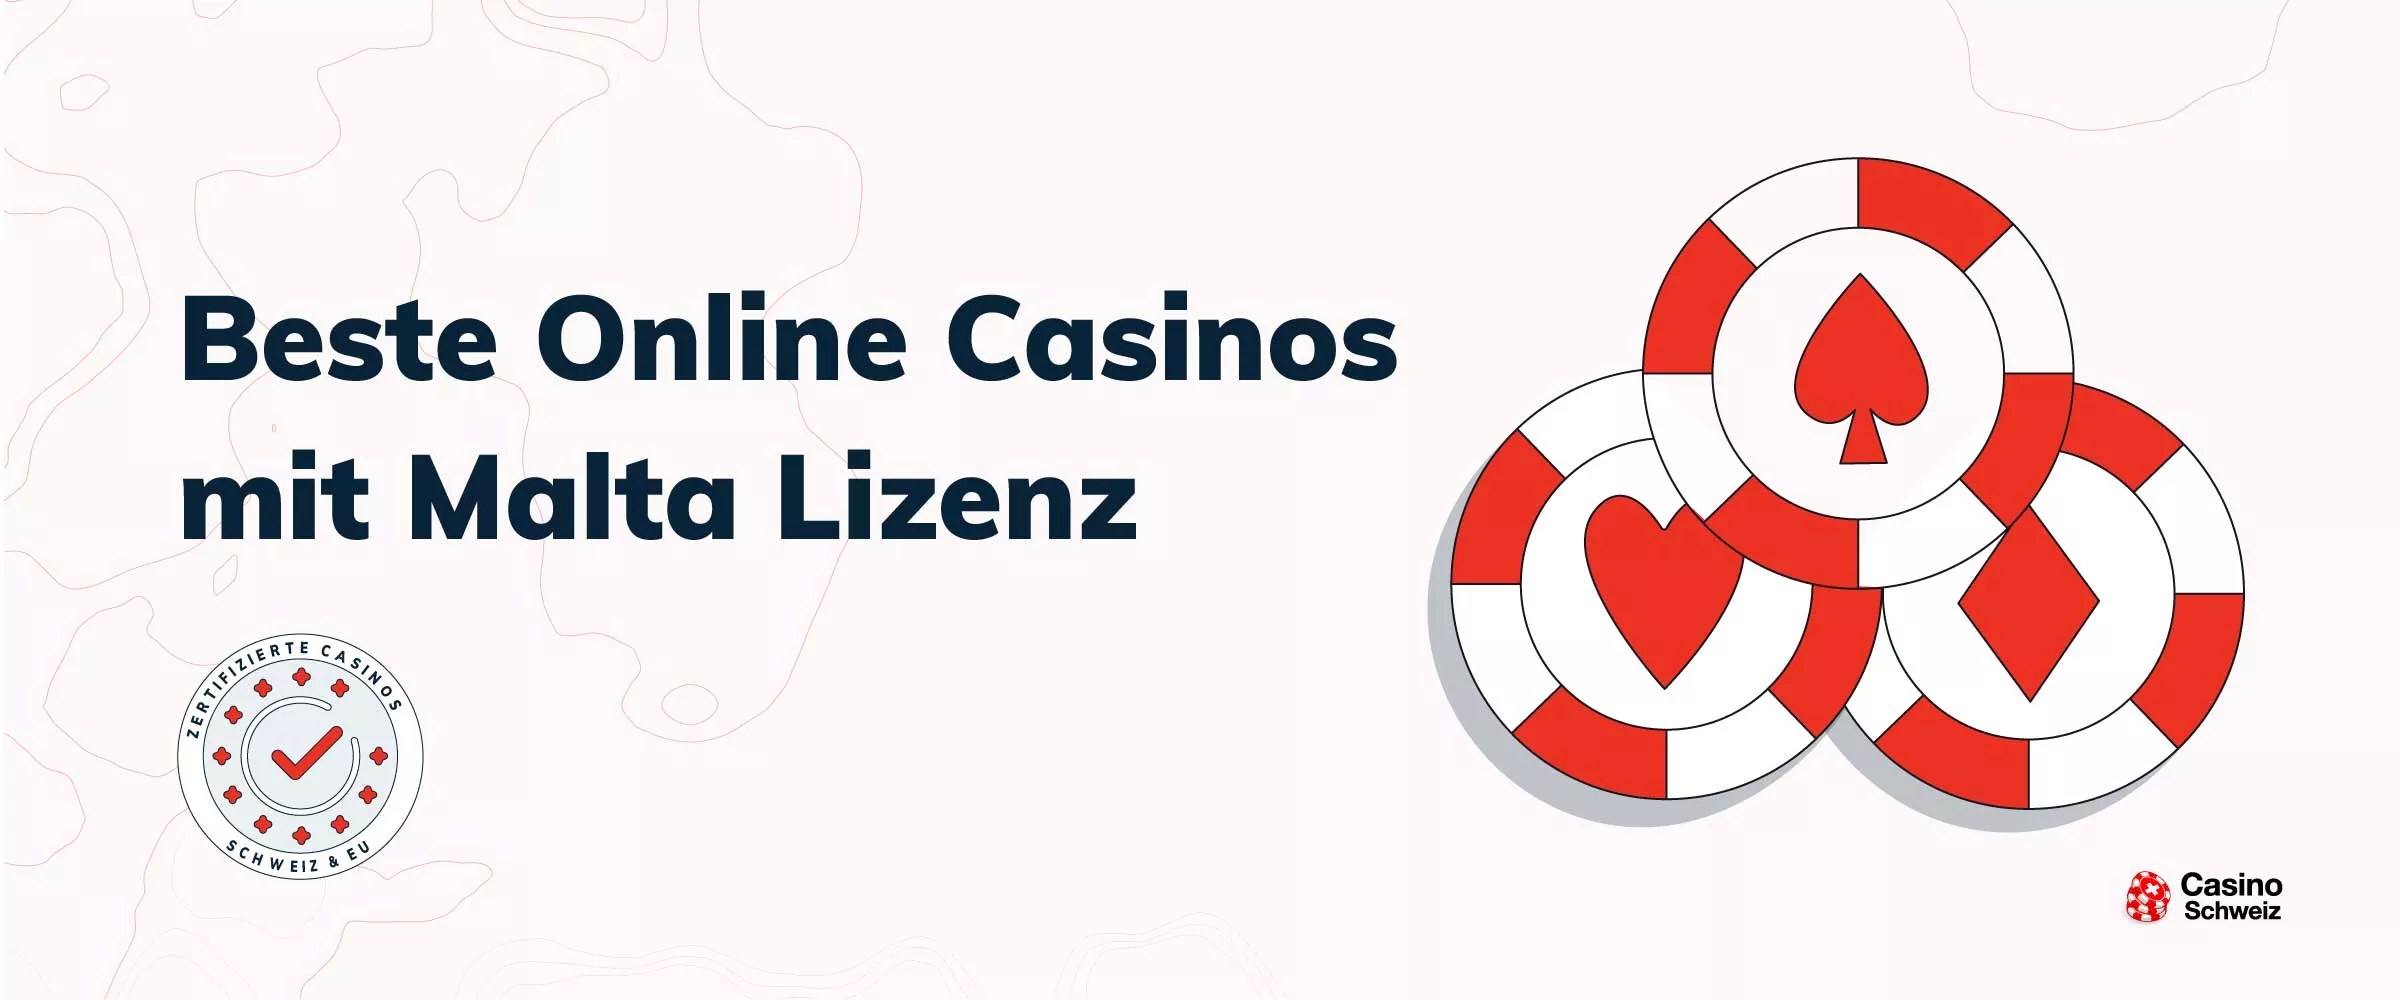 Beste Online Casinos mit Malta Lizenz 